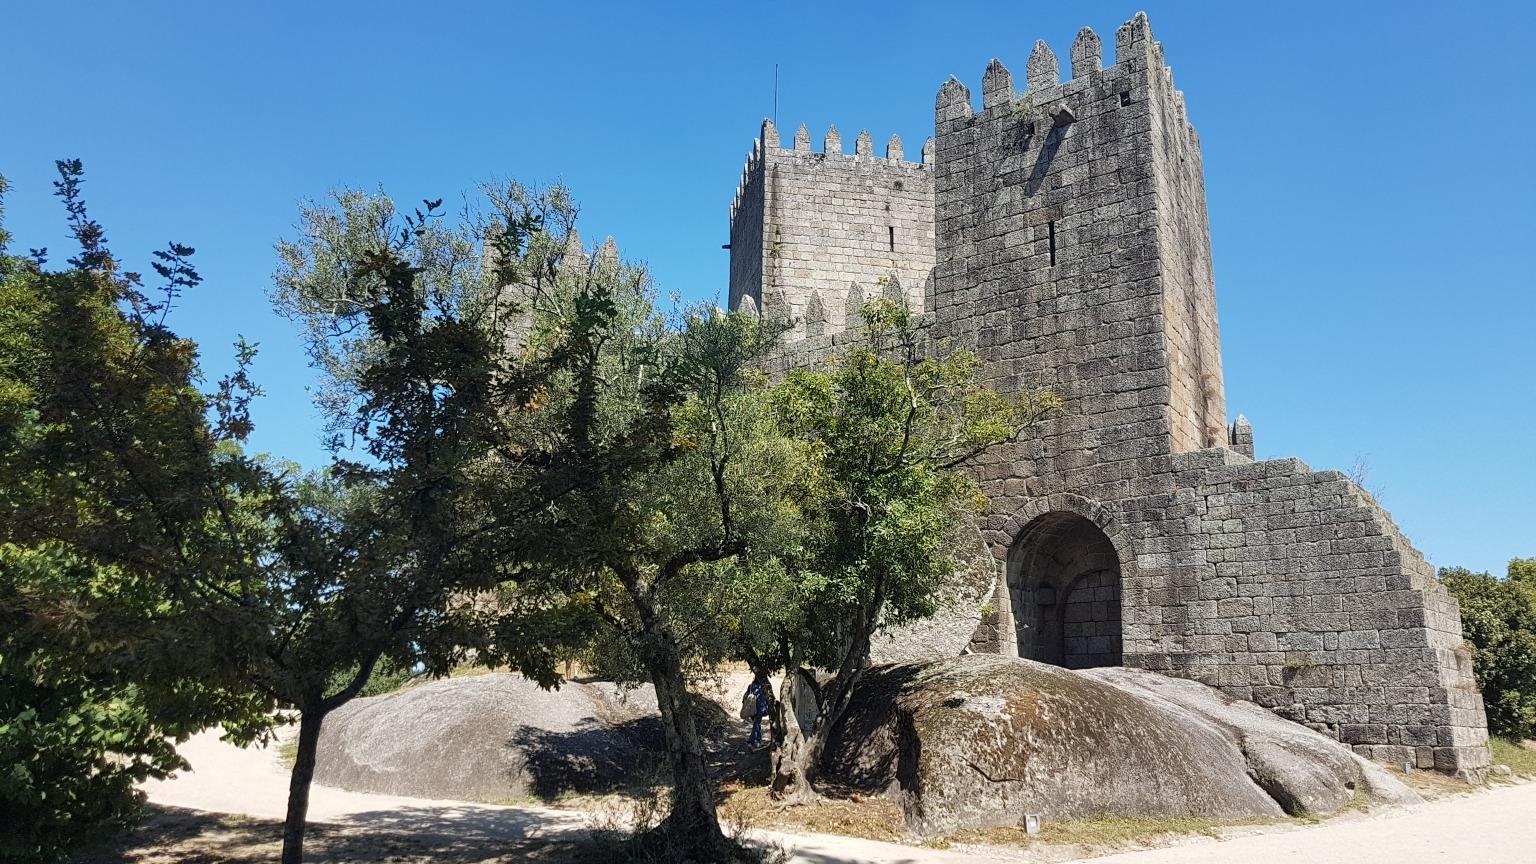 Construído no século X, o Castelo de Guimarães é o principal monumento medieval desta cidade histórica e património da UNESCO.